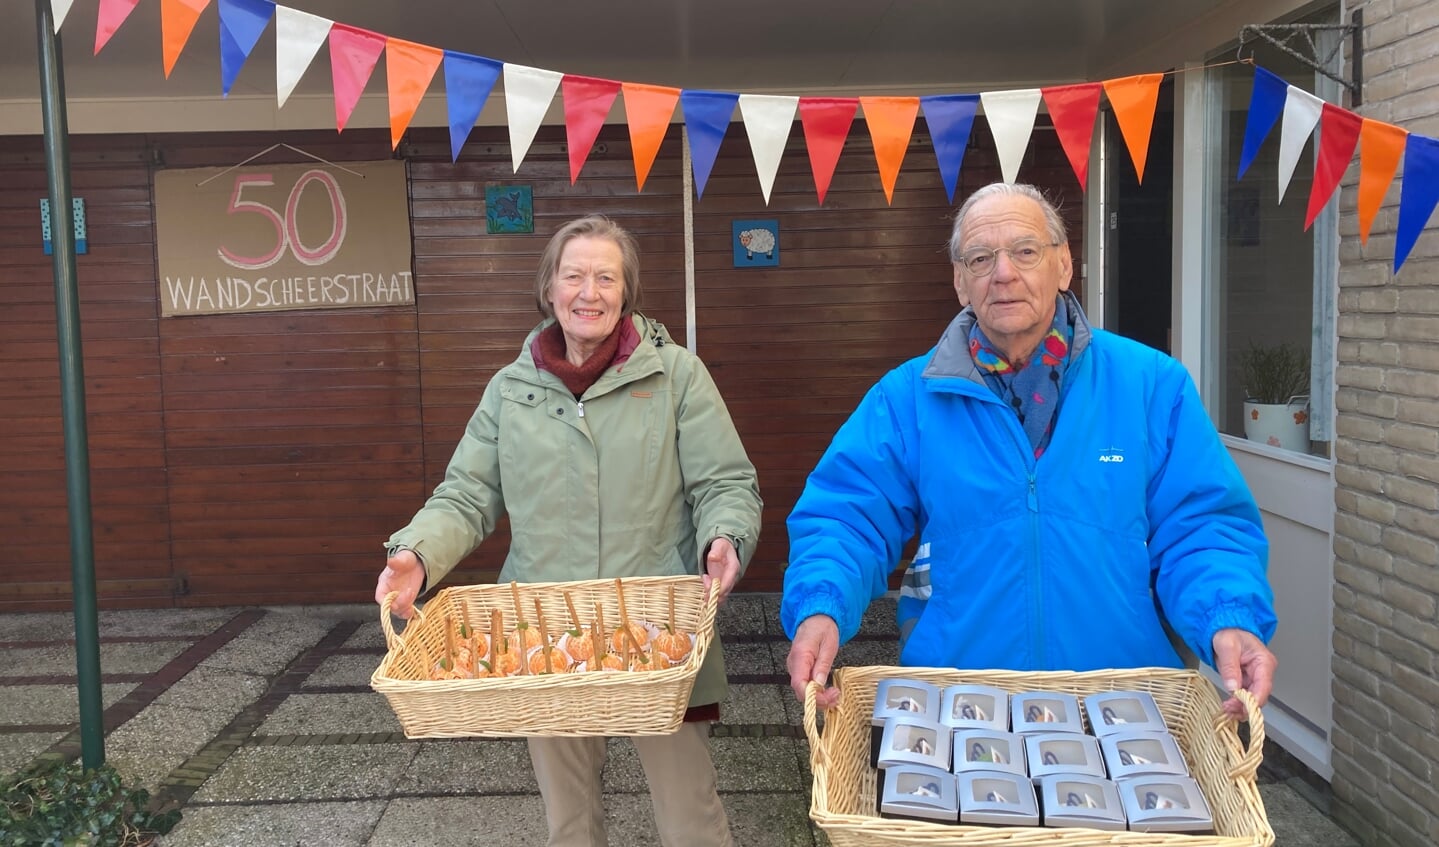 Lodewijk (81) en Dieneke (77) Gimbel trakteerden de buurtbewoners zaterdag op een gebakje.